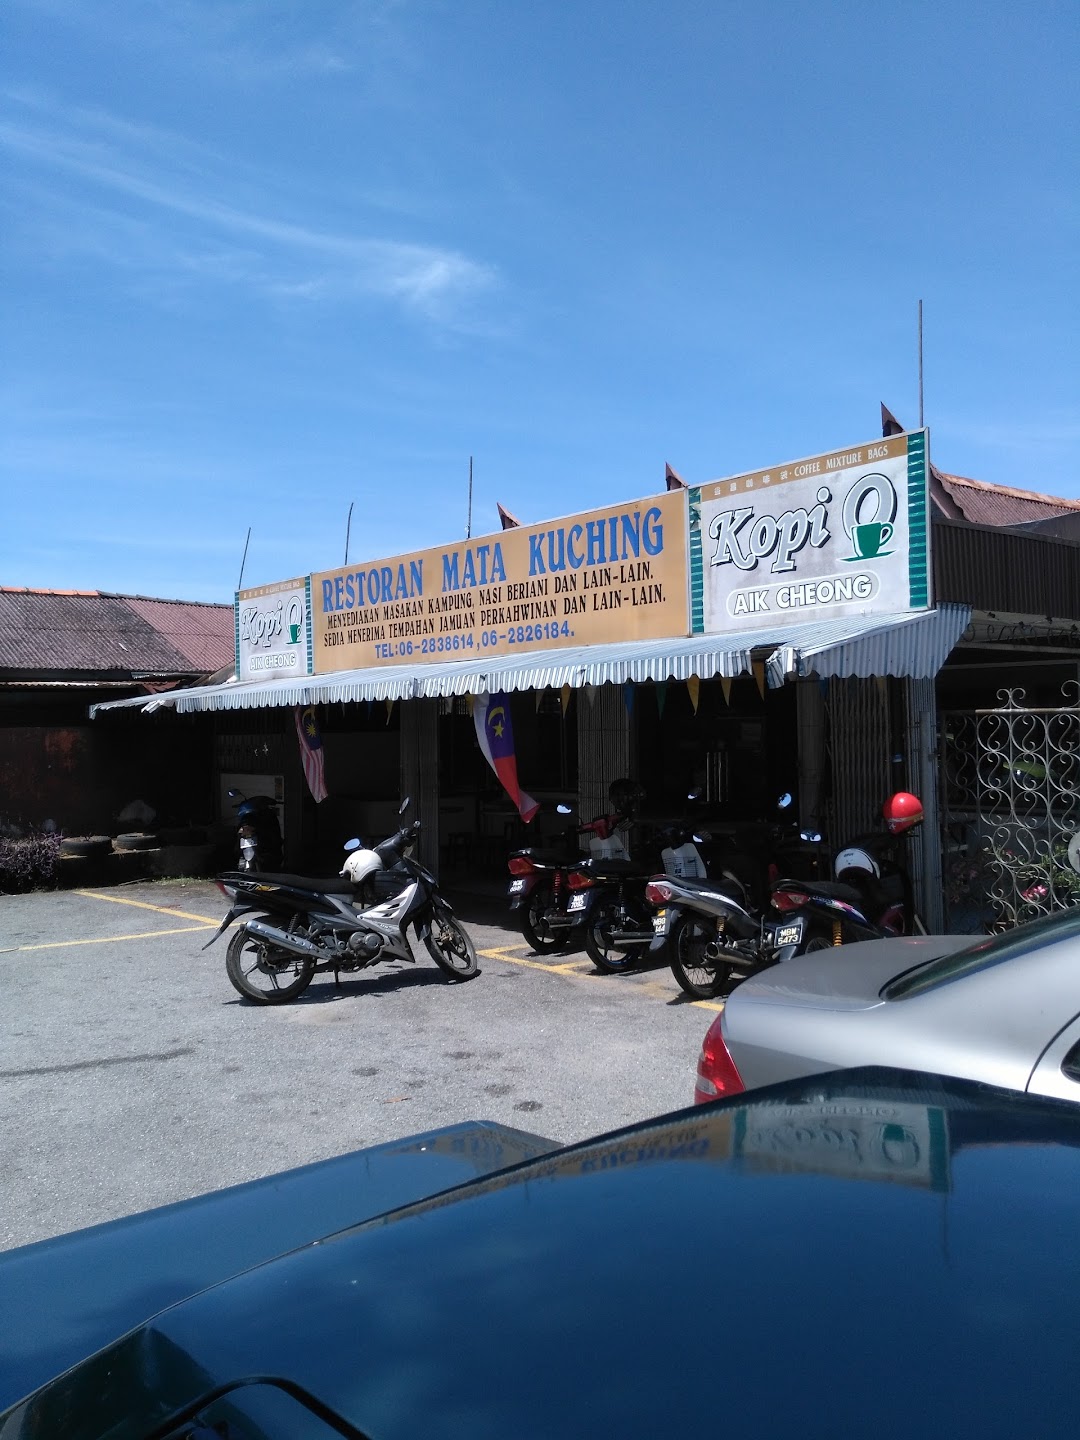 Restoran Mata Kuching